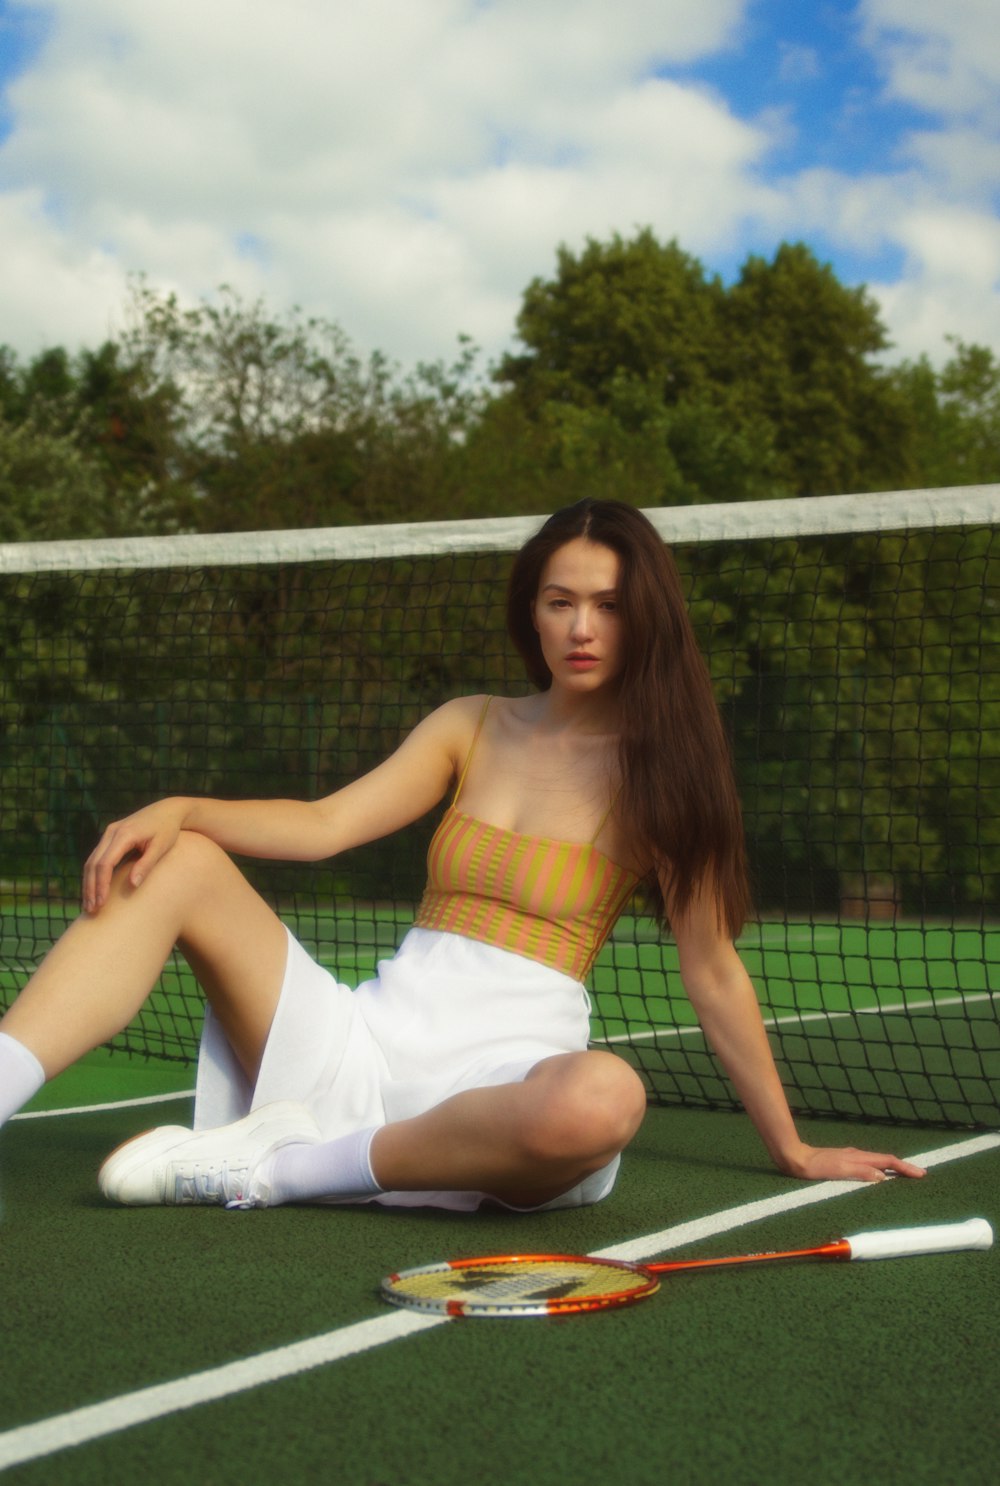 Frau im weißen Rock sitzt auf Tennisnetz